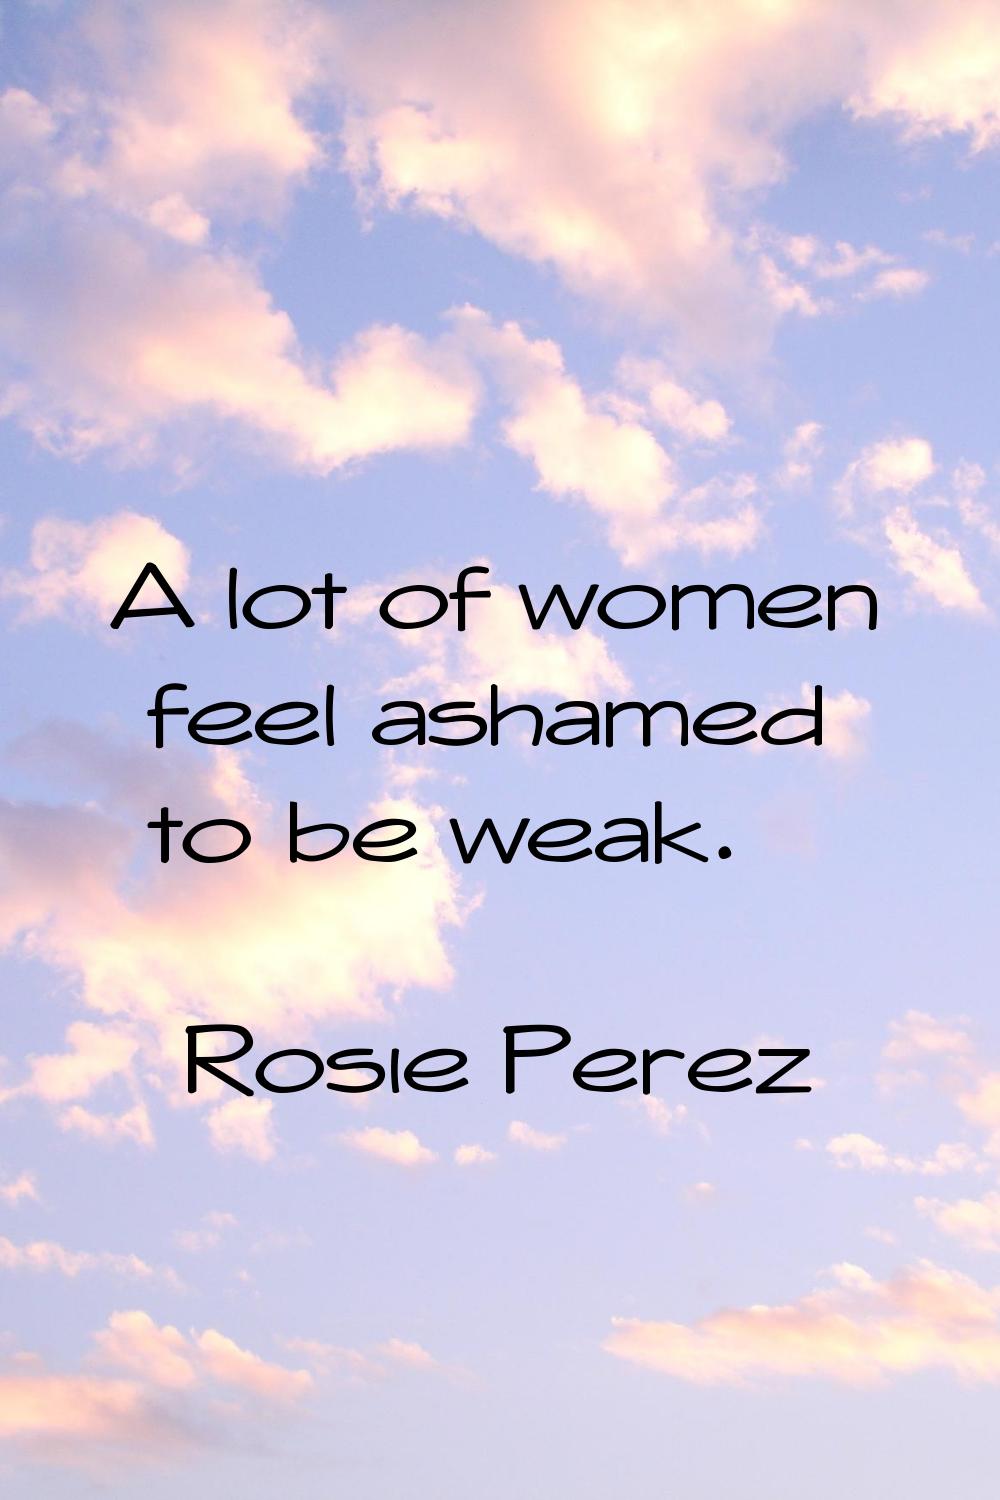 A lot of women feel ashamed to be weak.